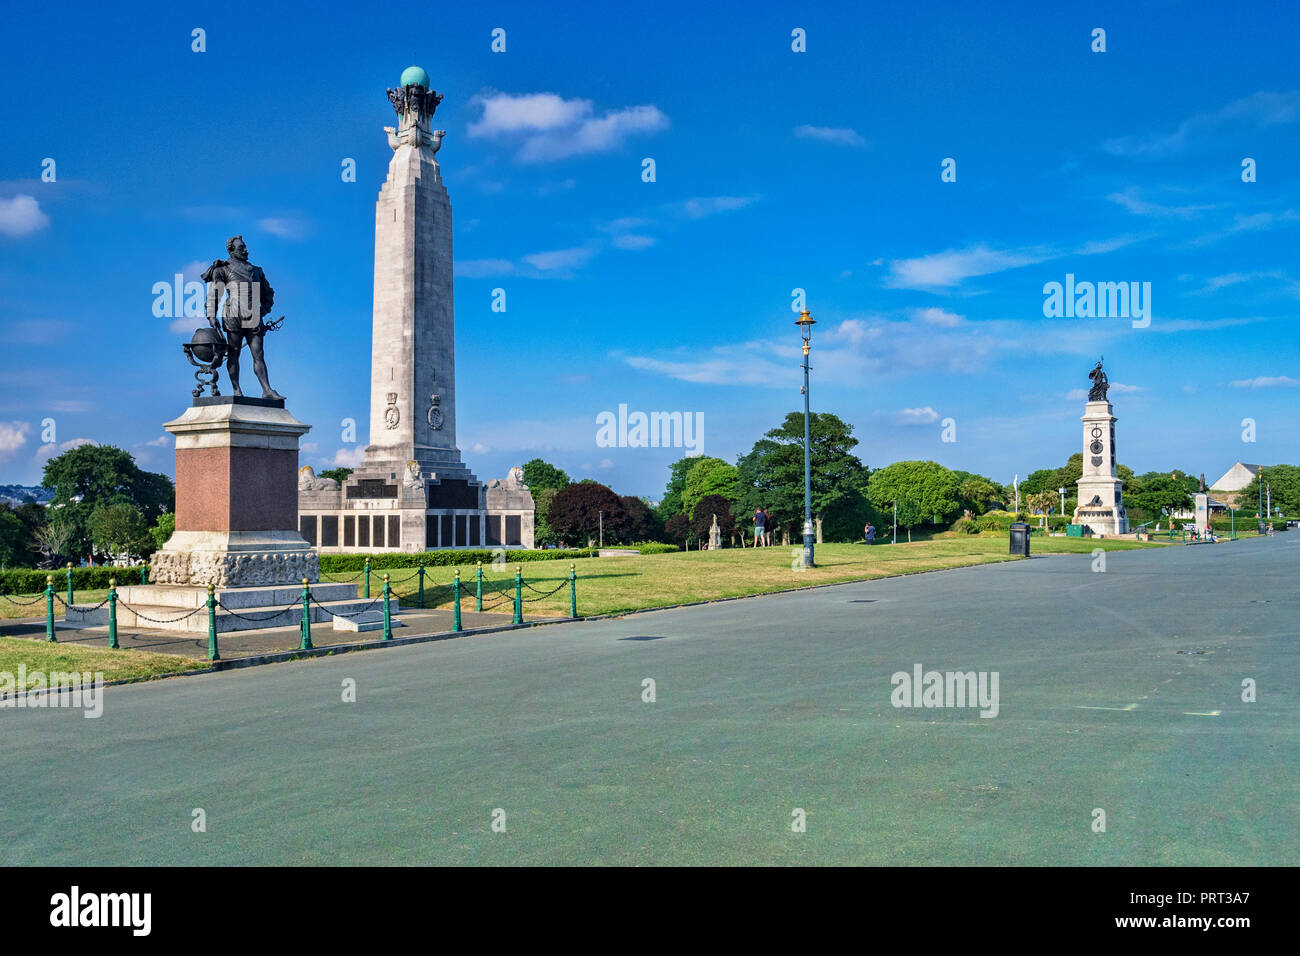 P Juni 2018: Plymouth, Devon, UK-Statue von Sir Francis Drake und der Navy Memorial, Plymouth Hoe. Die Armada Memorial können auf der rechten Seite gesehen werden. Stockfoto